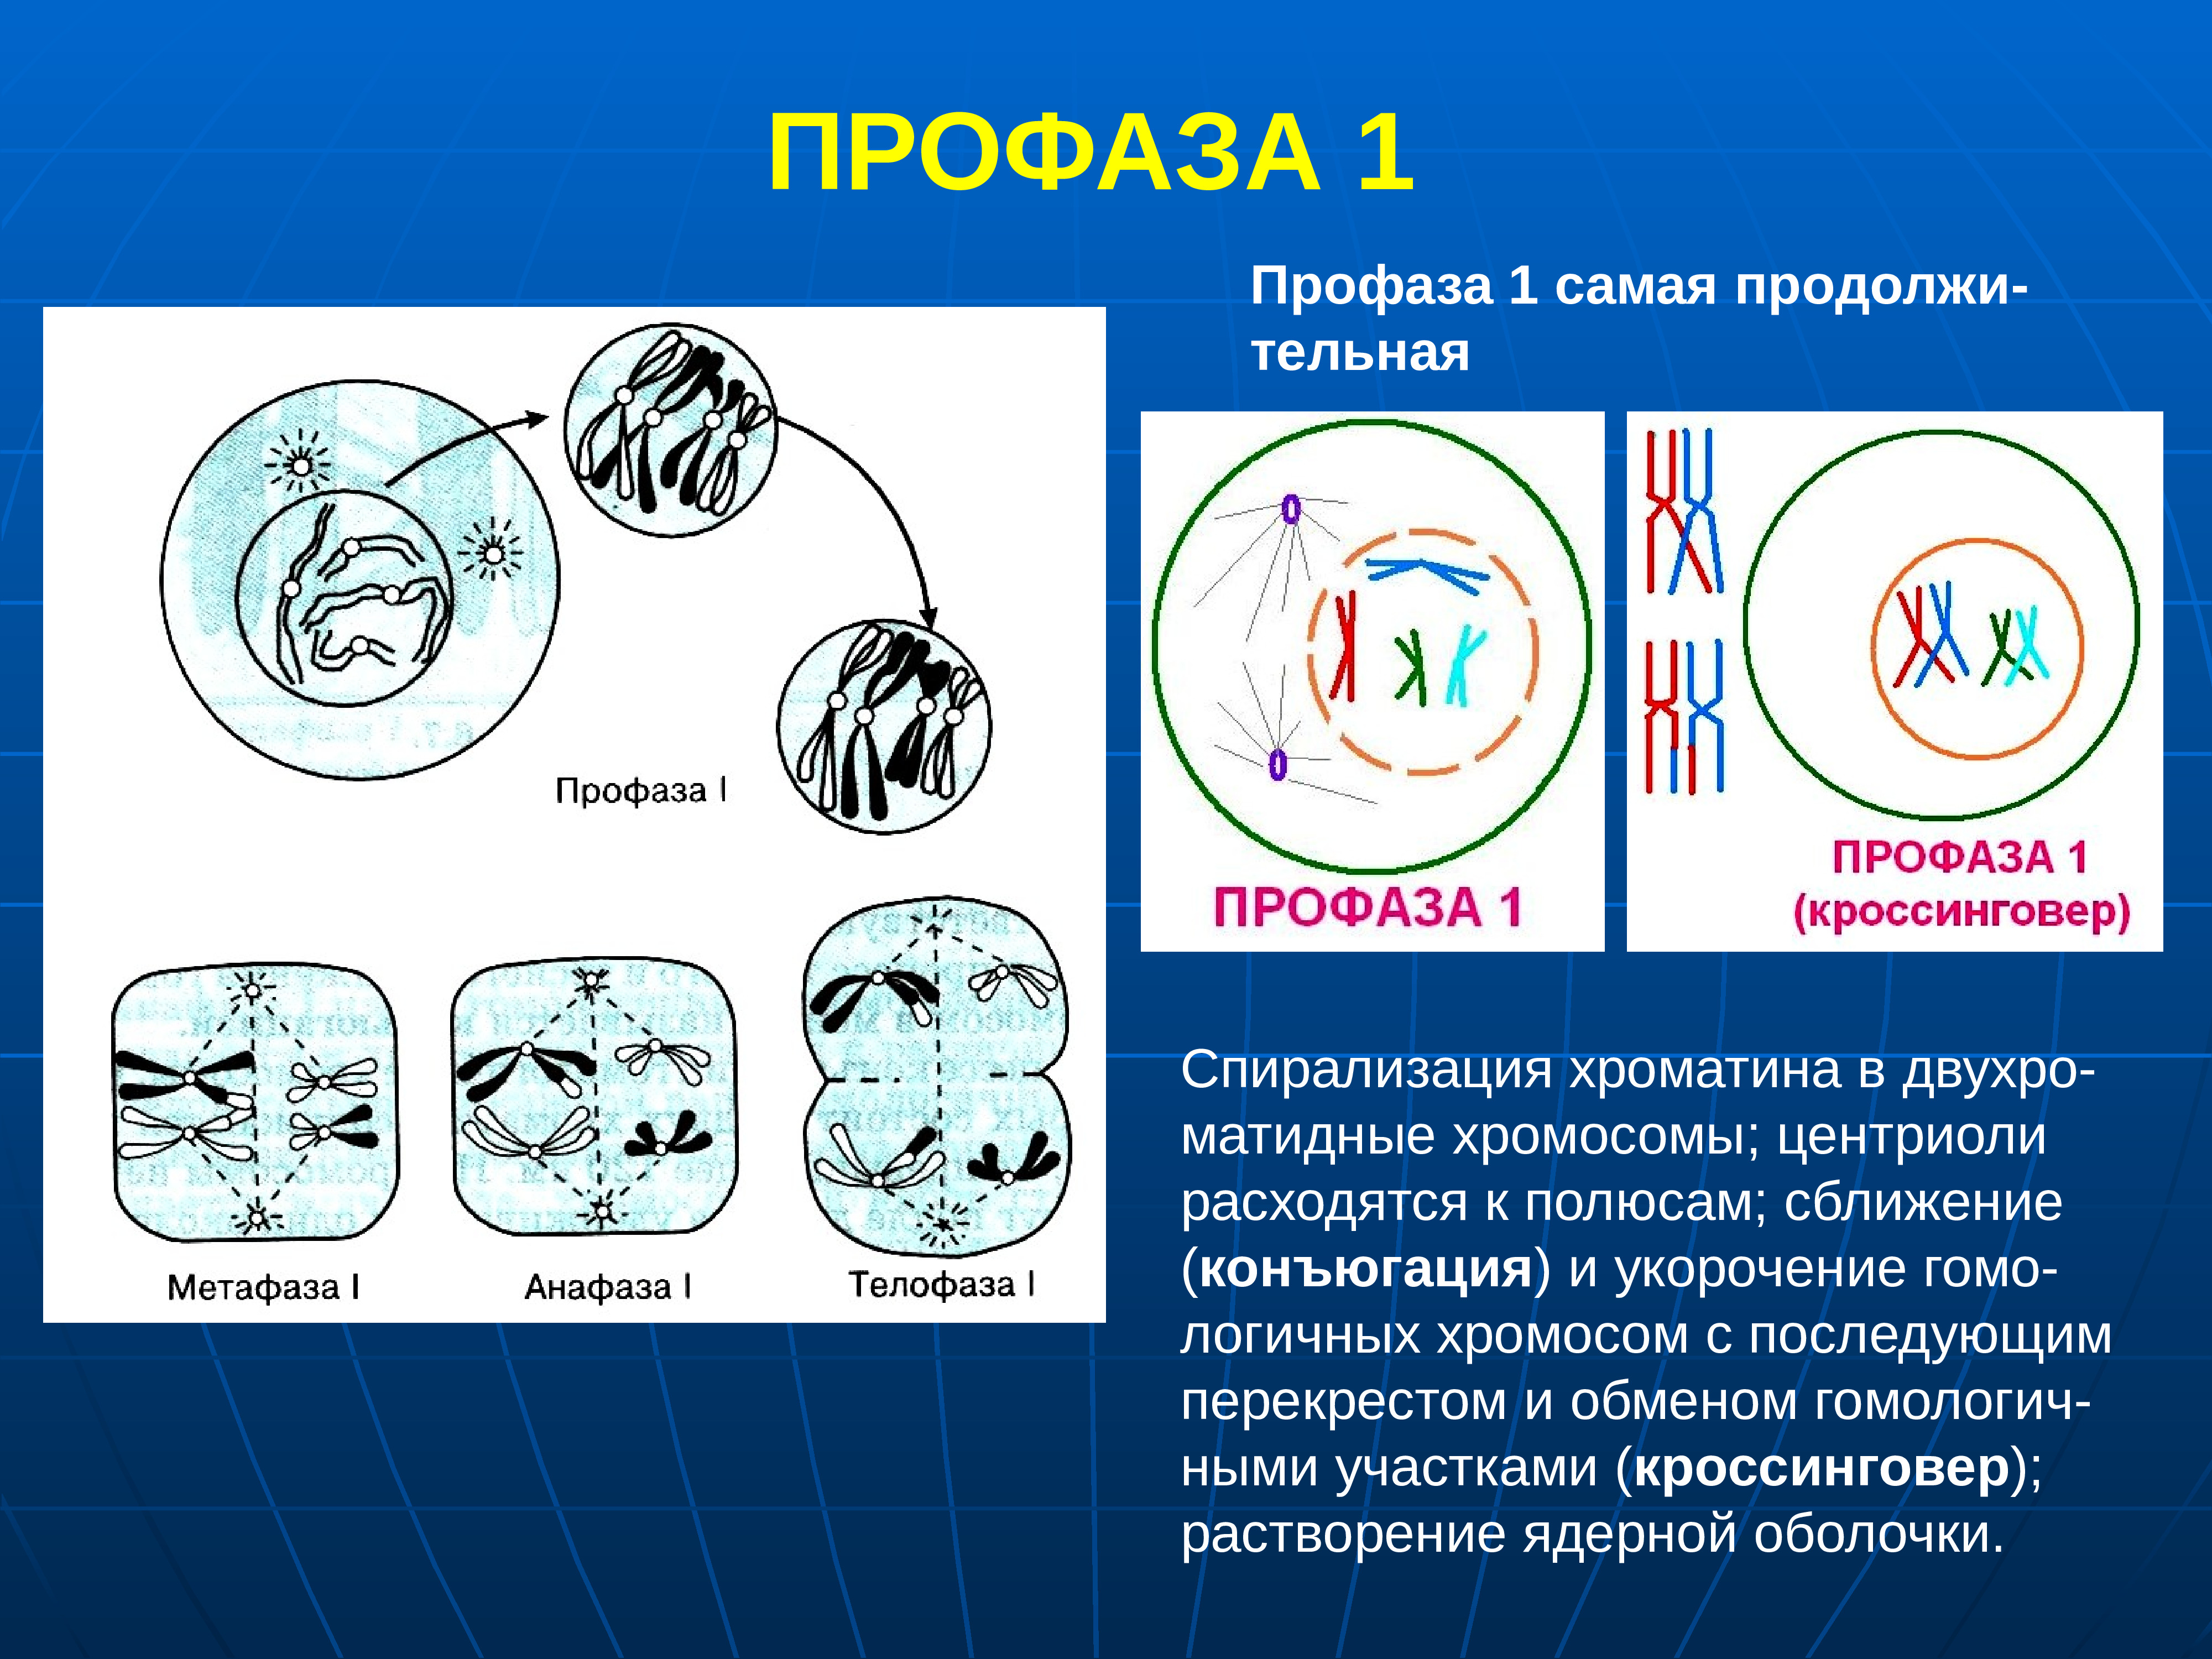 Спирализация хромосом происходит в фазе. Мейоз профаза 1 процессы. Профаза лептотена. Профаза первого деления мейоза процессы. Первое деление мейоза профаза 1.